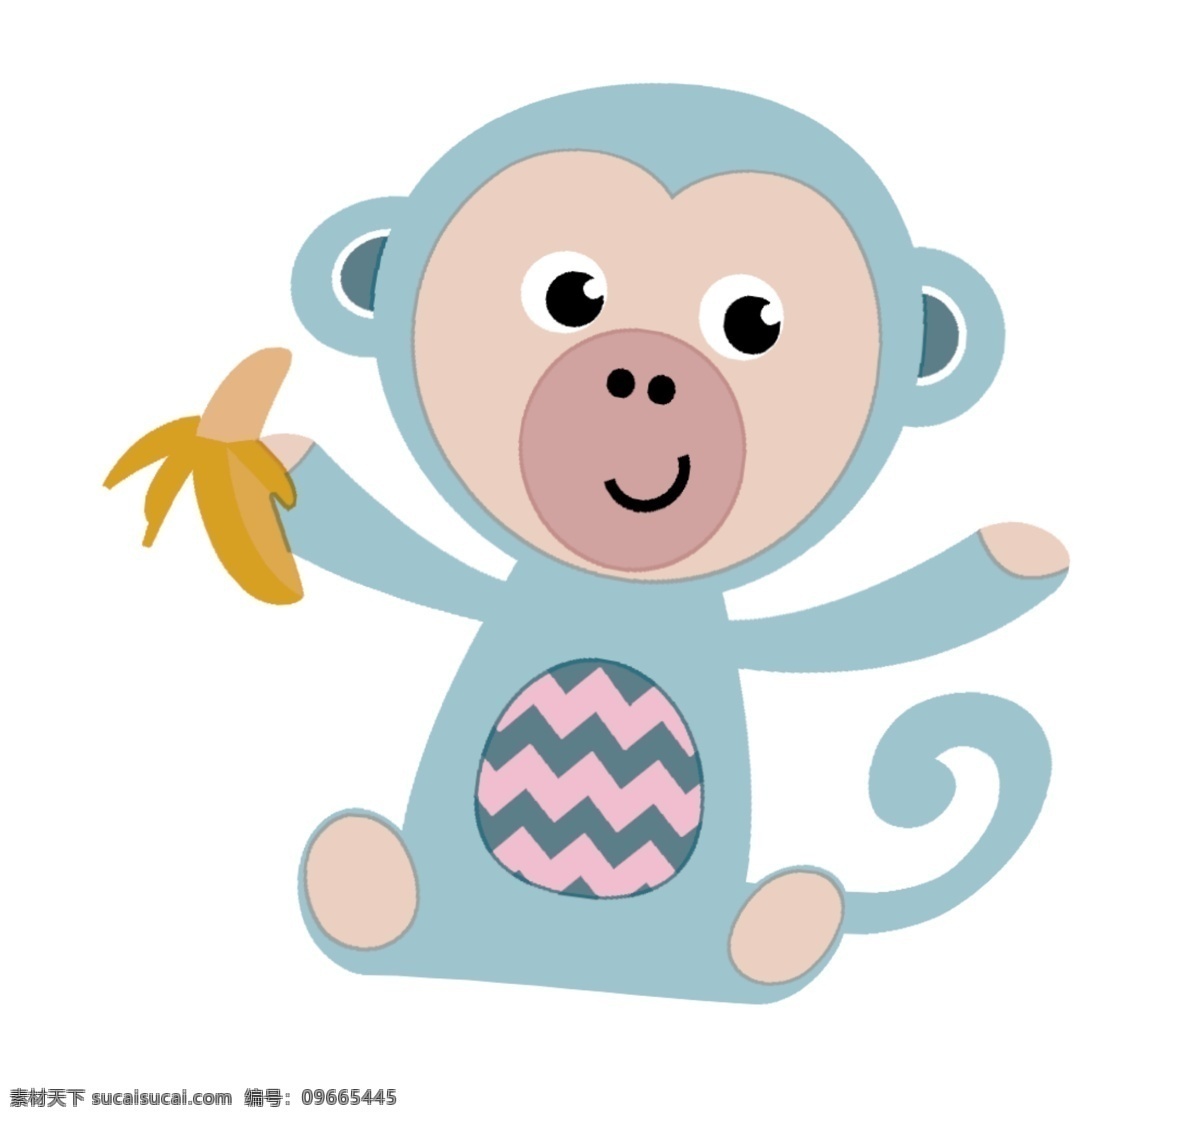 猴子图片 猴子 小动物 猴子香蕉图 小猴子 动物 花布桌布 底纹边框 背景底纹